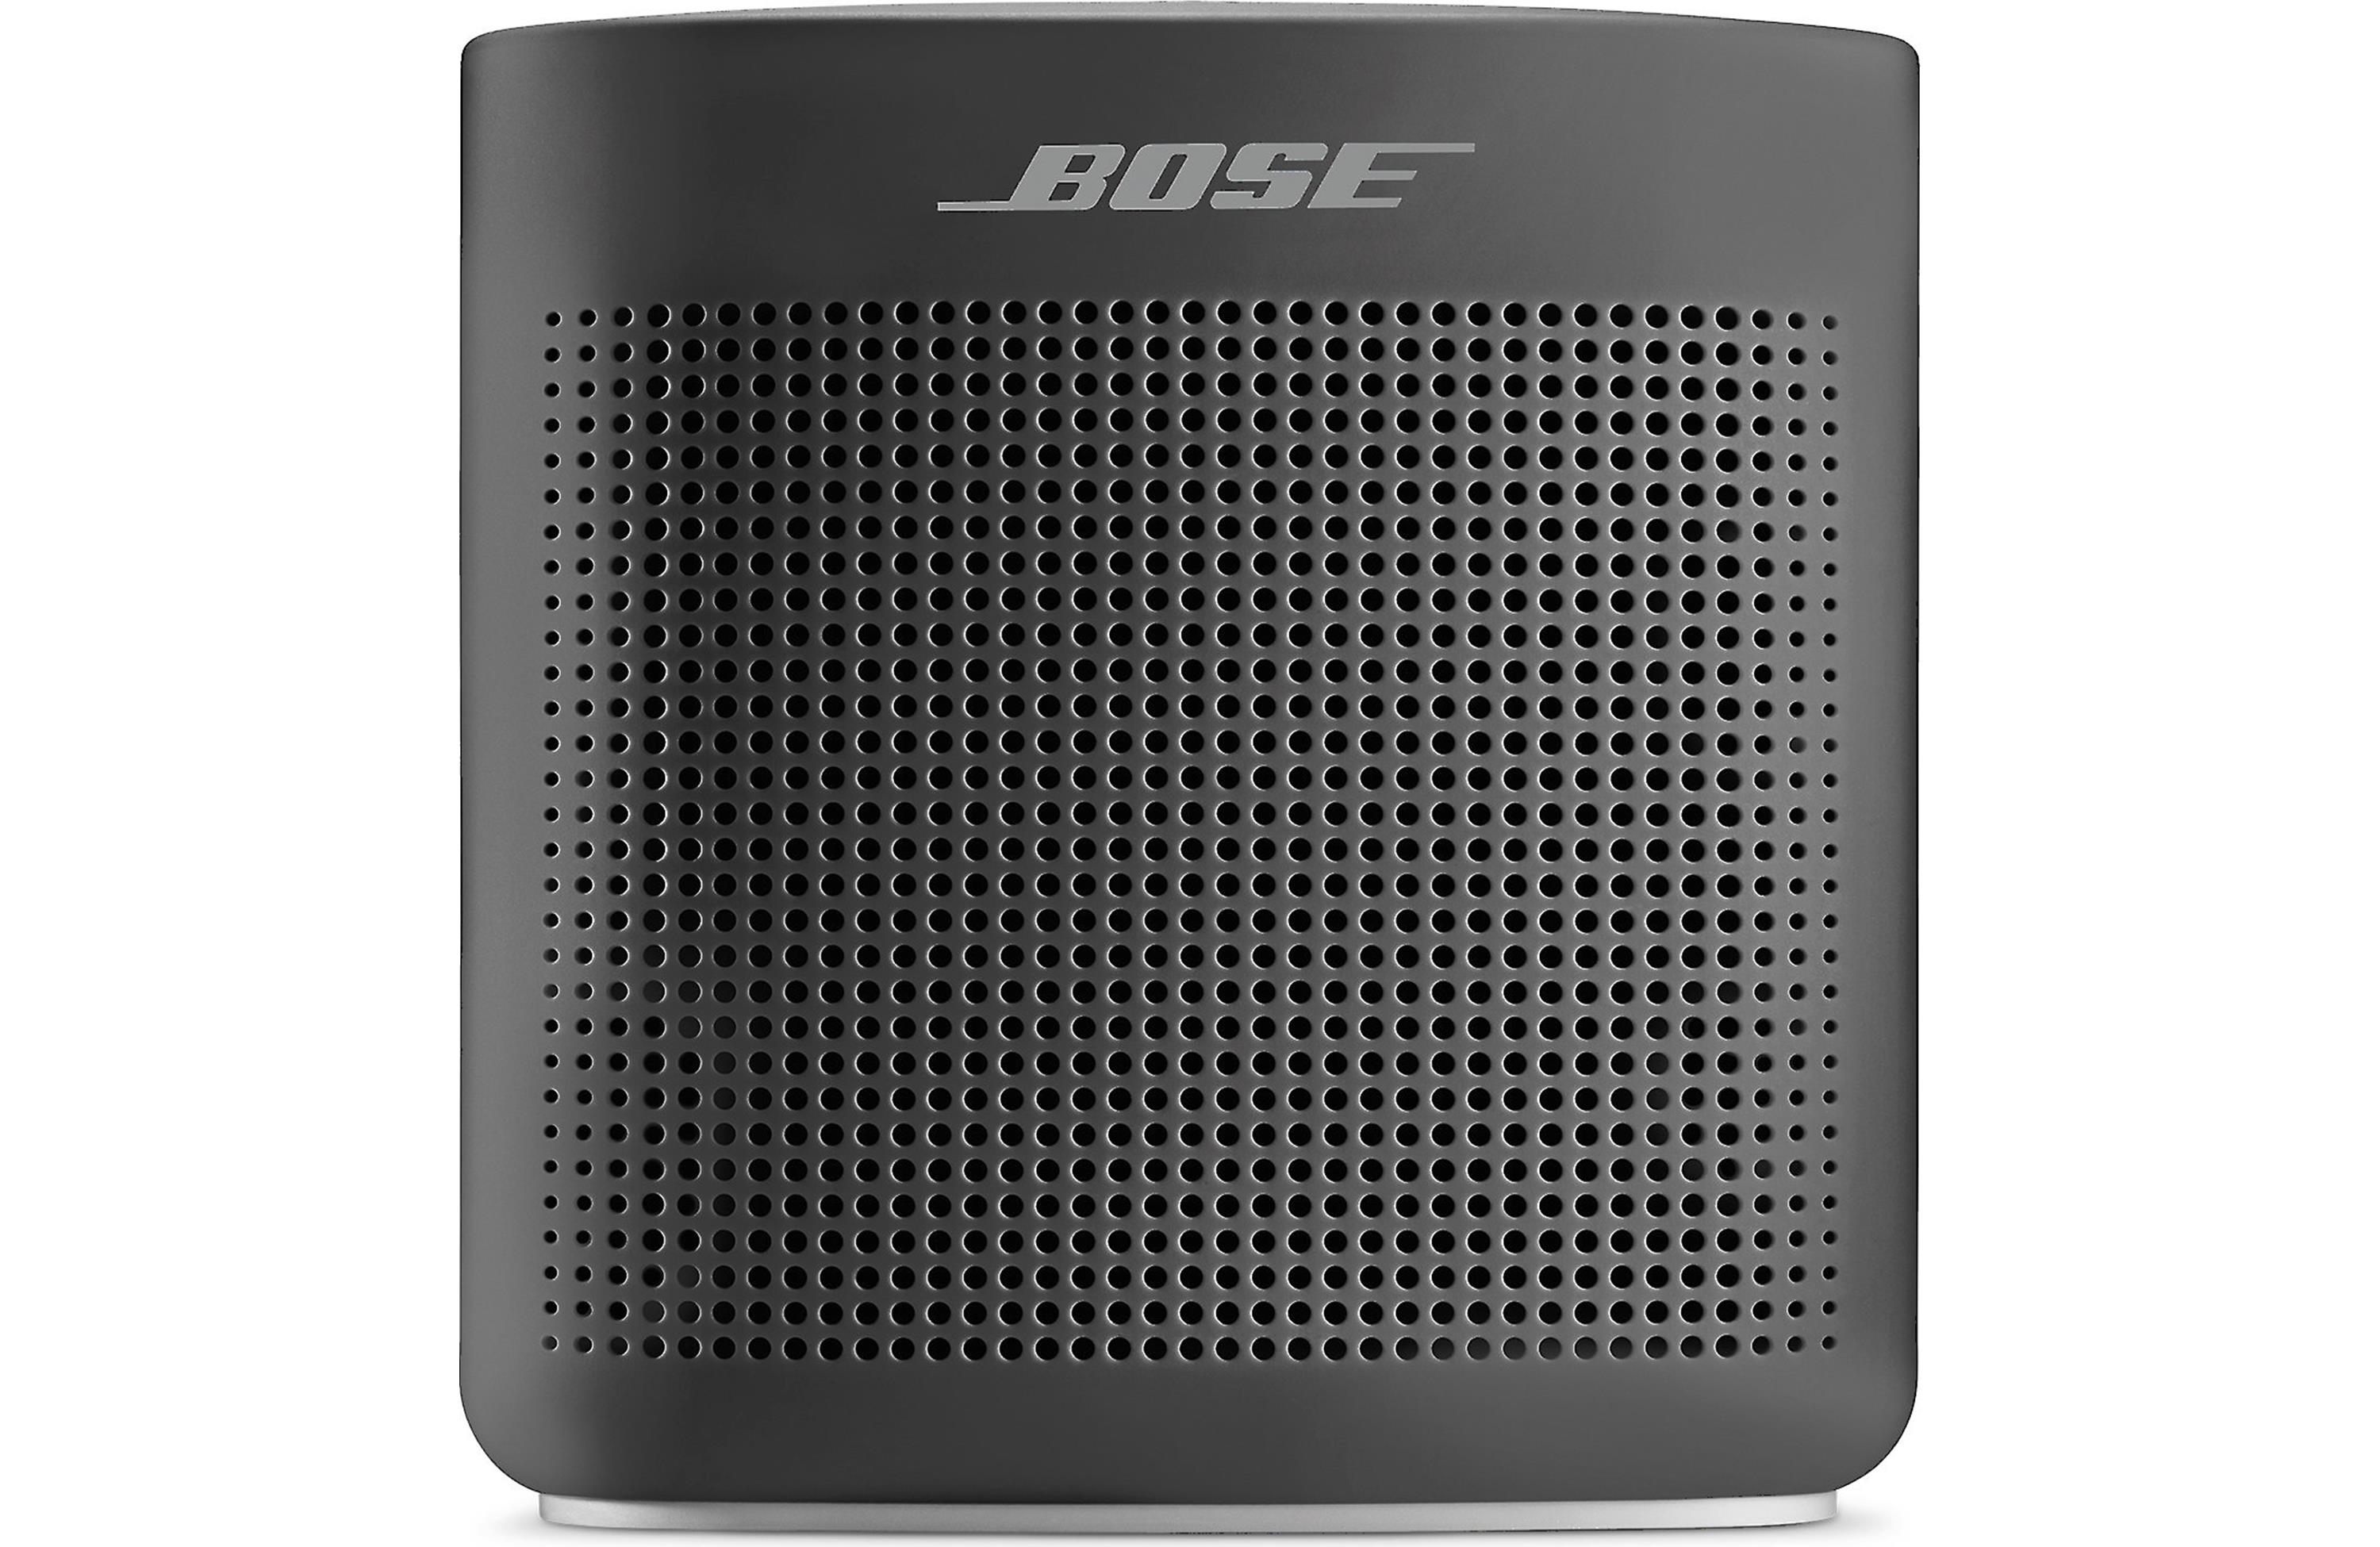 Bose soundlink 2